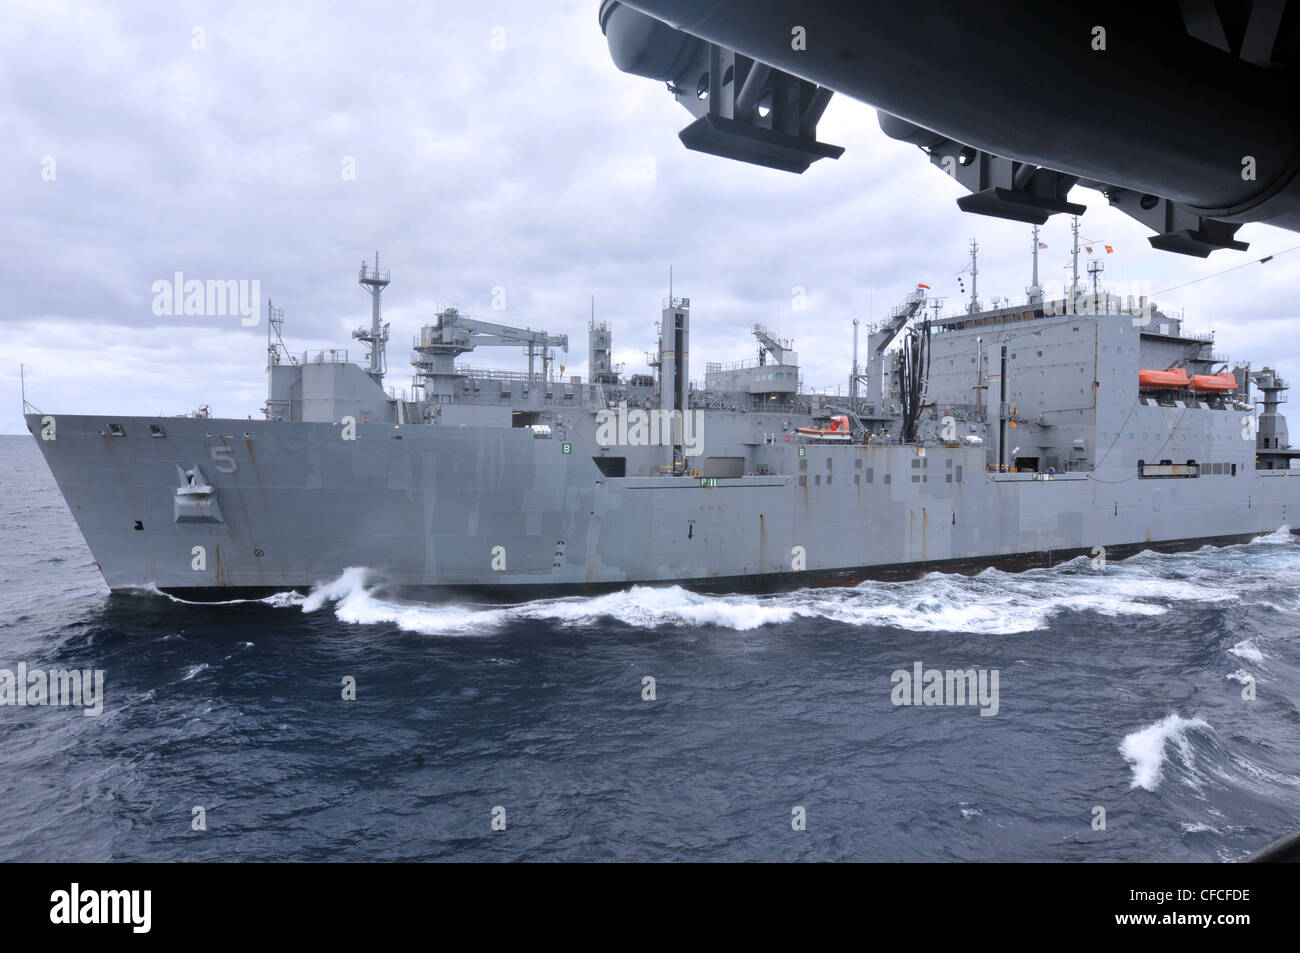 El buque de carga seca/munición del comando de Sealift Militar USNS Robert E. Peary (T-AKE 5) realiza una reposición en el mar con el buque de asalto anfibio USS Kearsarge (LHD 3). Kearsarge está en marcha, completando la capacitación básica del Grupo de capacitación de afloat 1.3. Foto de stock